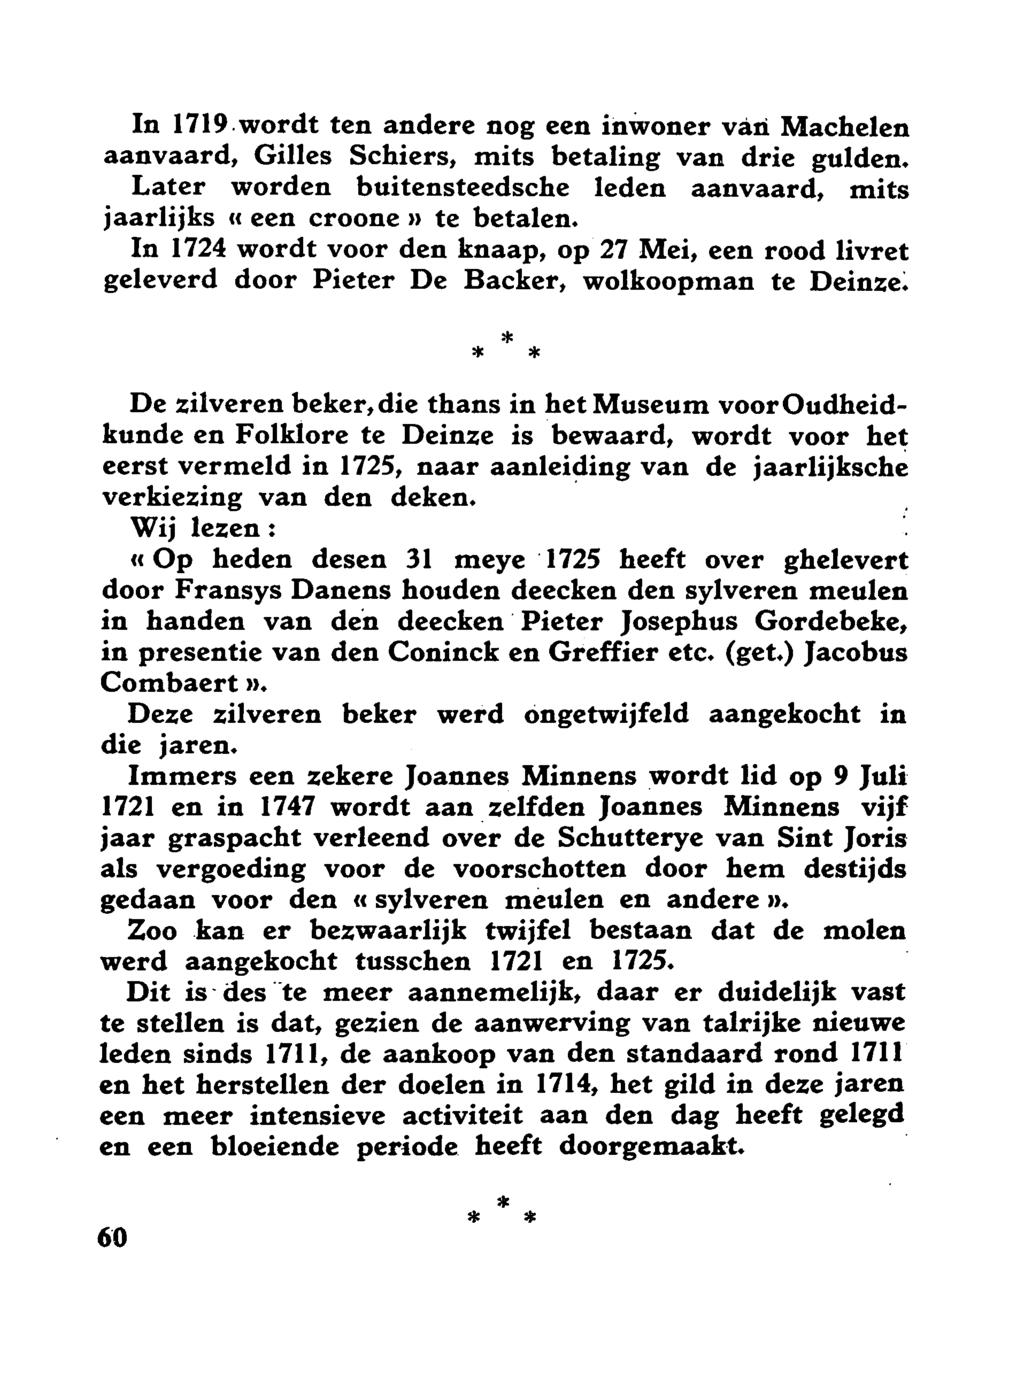 In 1719.wordt ten andere nog een inwoner van Macheten aanvaard, Gilles Schiers, mits betaling van drie gulden. Later worden buitensteedsche leden aanvaard, mits jaarlijks cc een croonen te betalen.